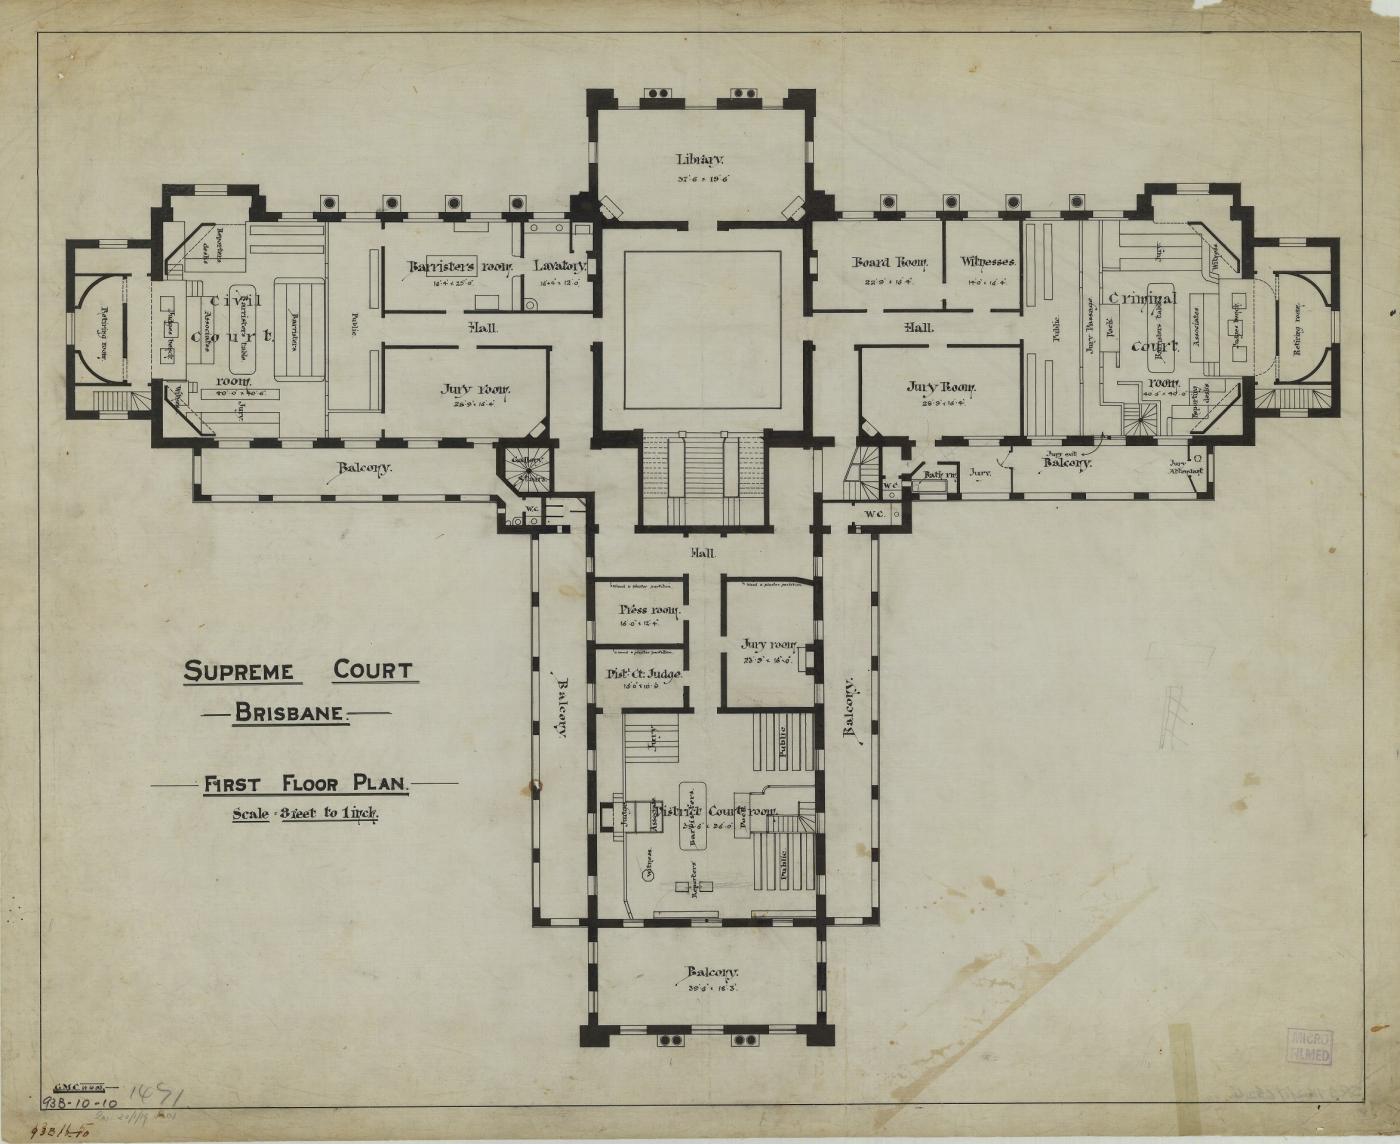 Supreme Court, Brisbane. First Floor Plan, 1895